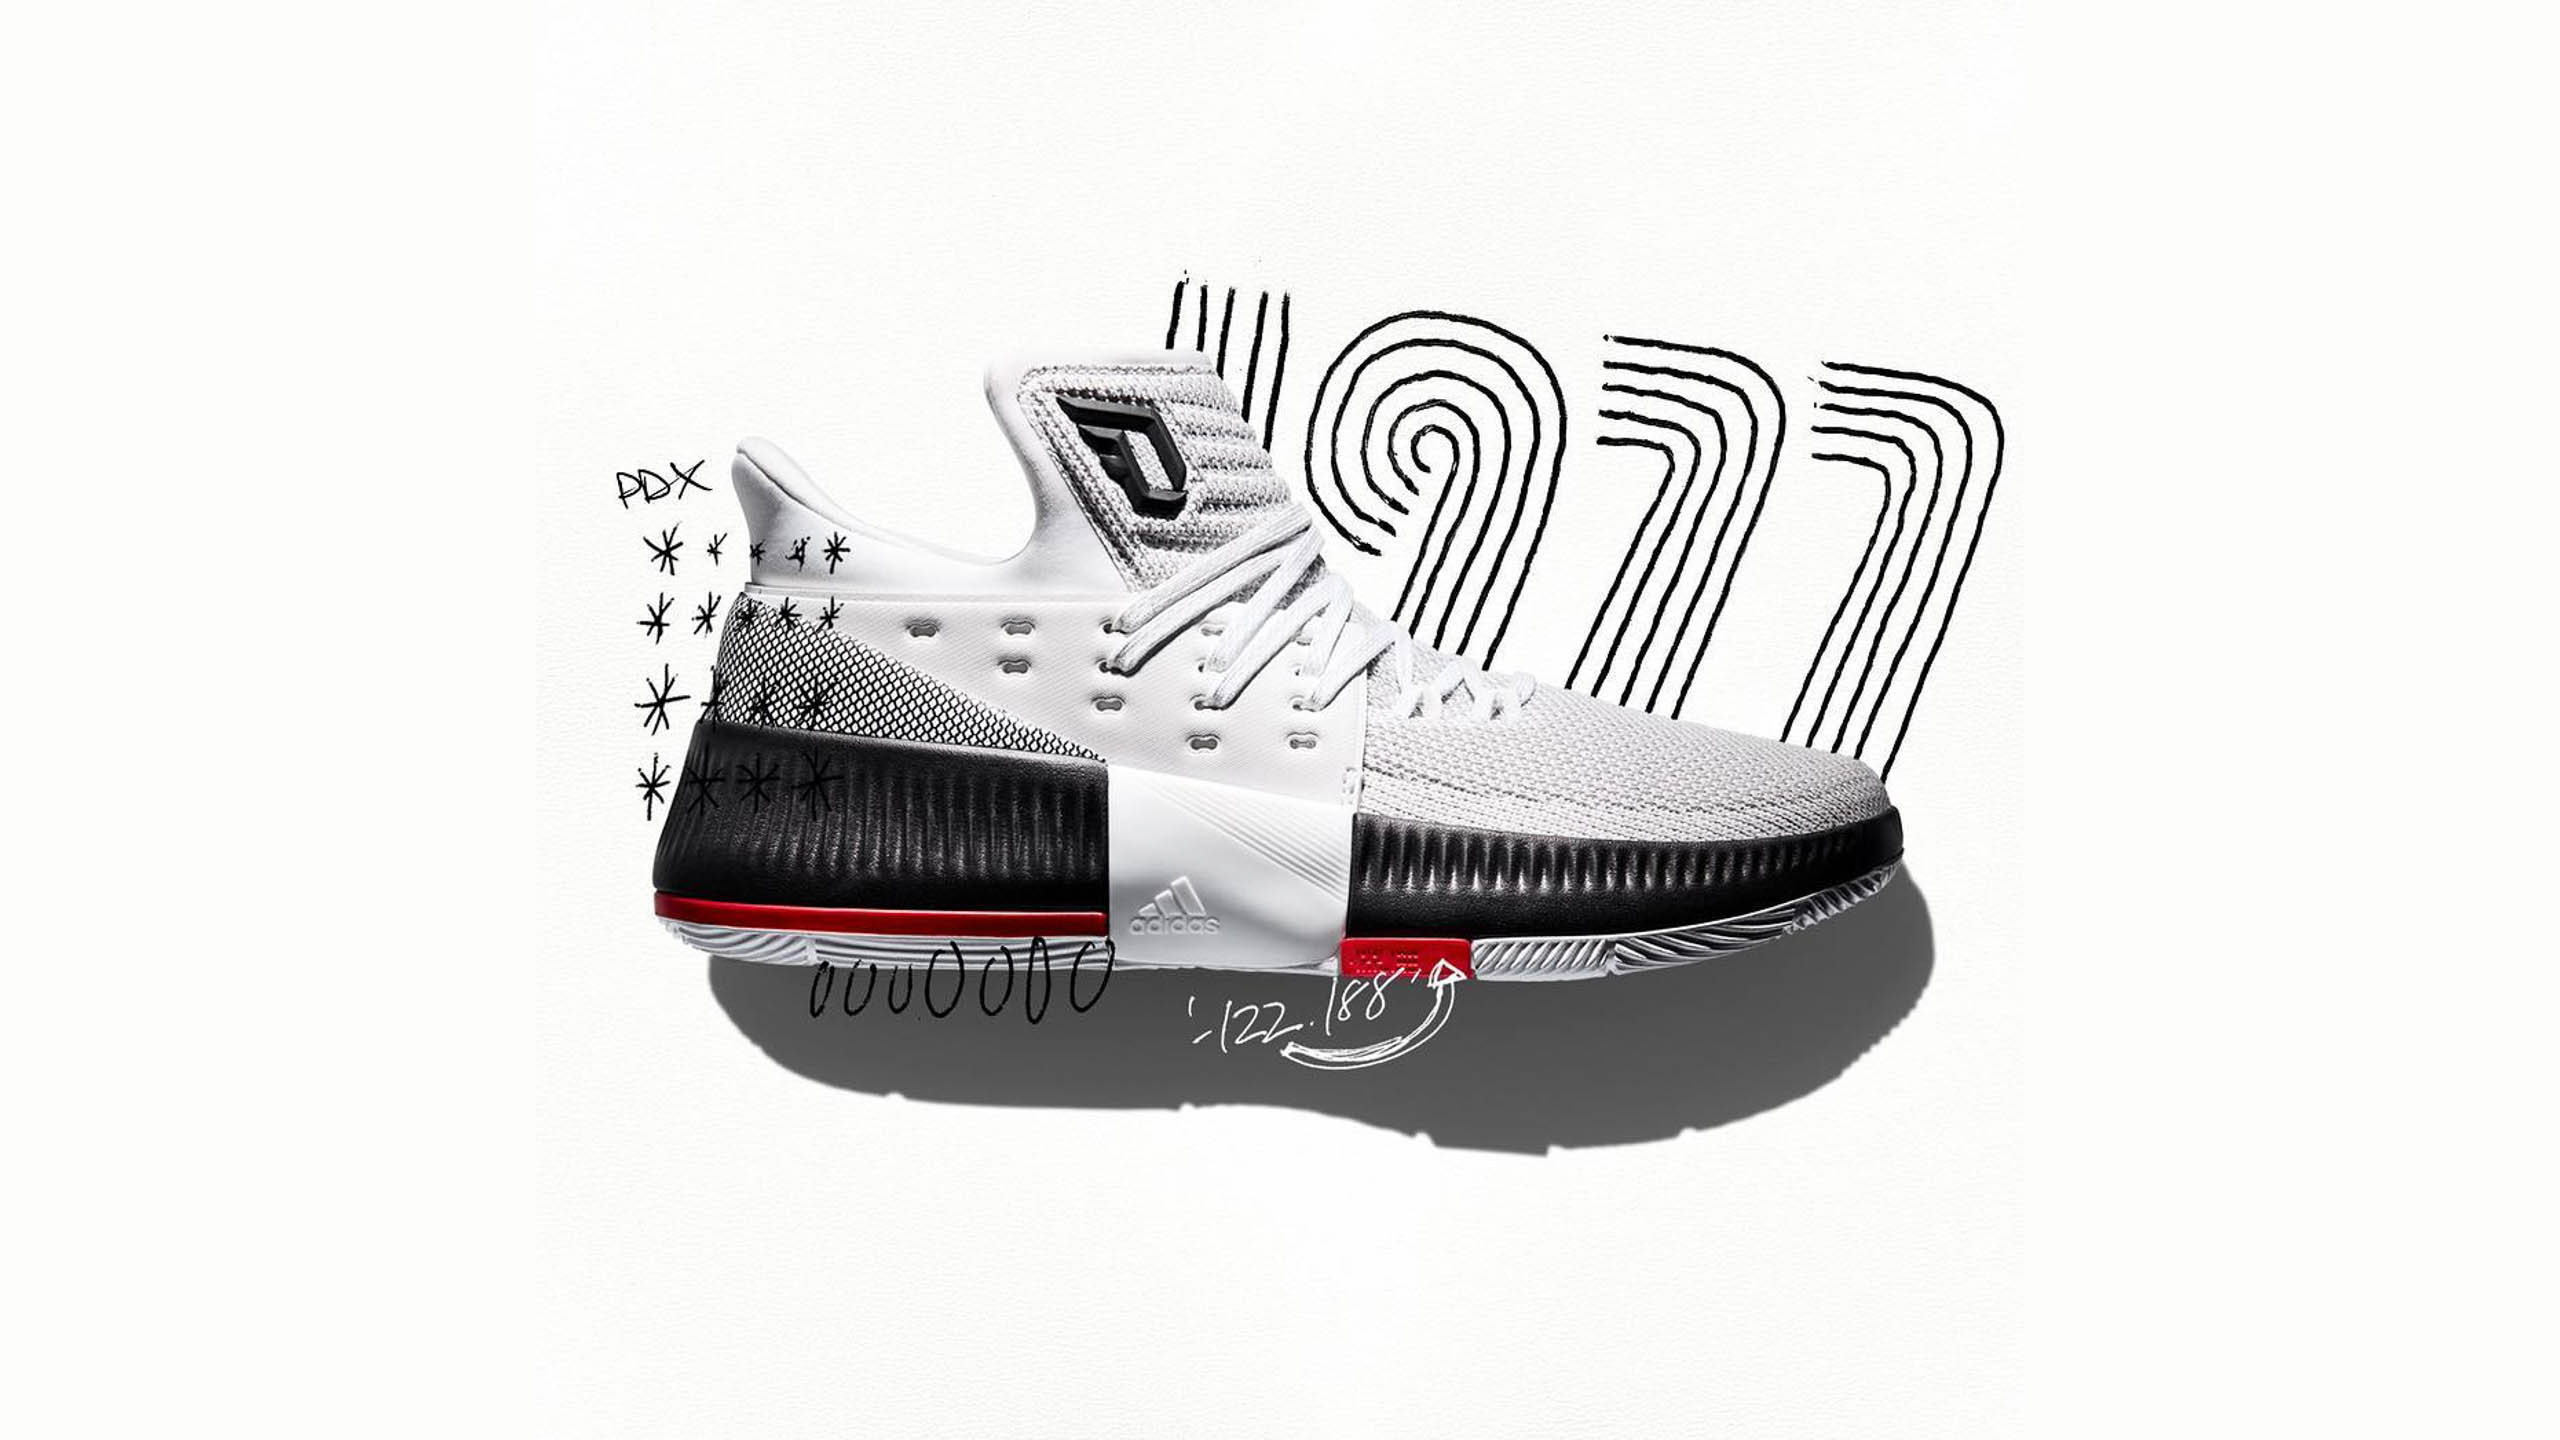 Adidas DLillard3 basketball footwear